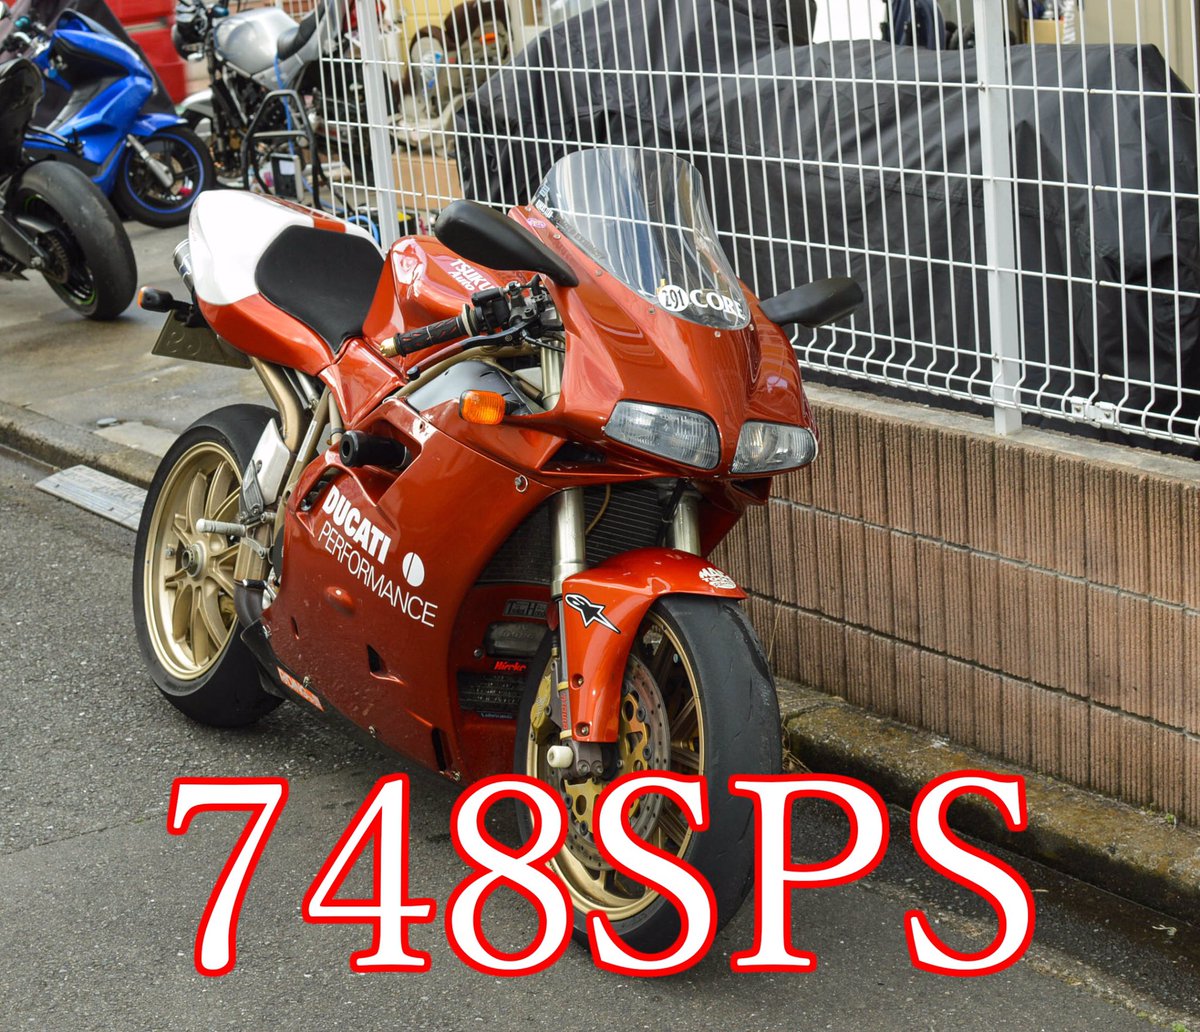 Mototopics Ducati 748 Sps キロ 車検11月まで 知る人と知る あの伝説のバイクです インテリアではなく しっかり乗られてるドゥカティはいいですね 足回りなんか現行車に勝ってやると言ってくるようなセッティングでした 相場15万する鍛造マルケ付き